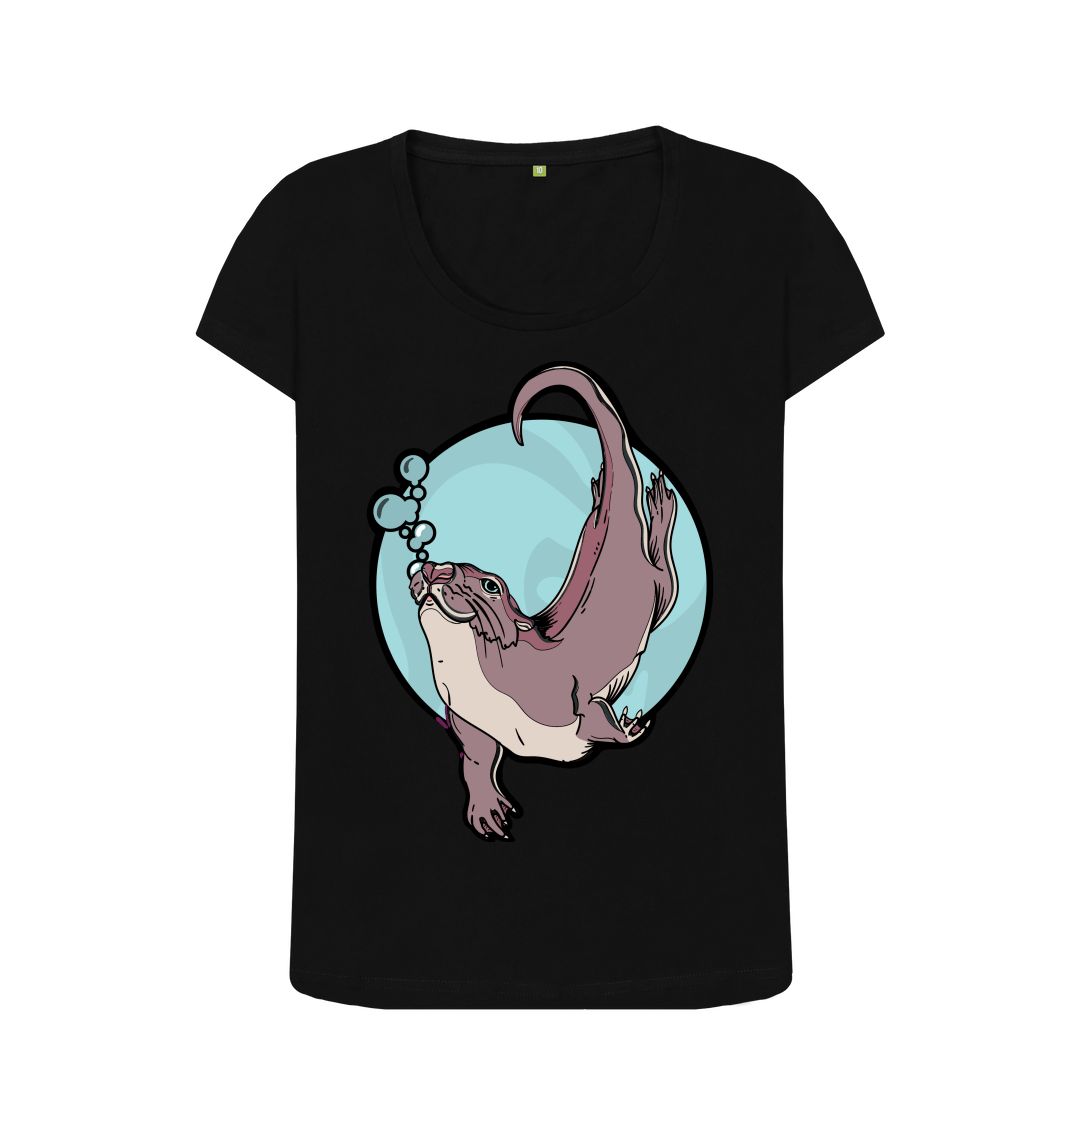 Black female Otter t-shirt